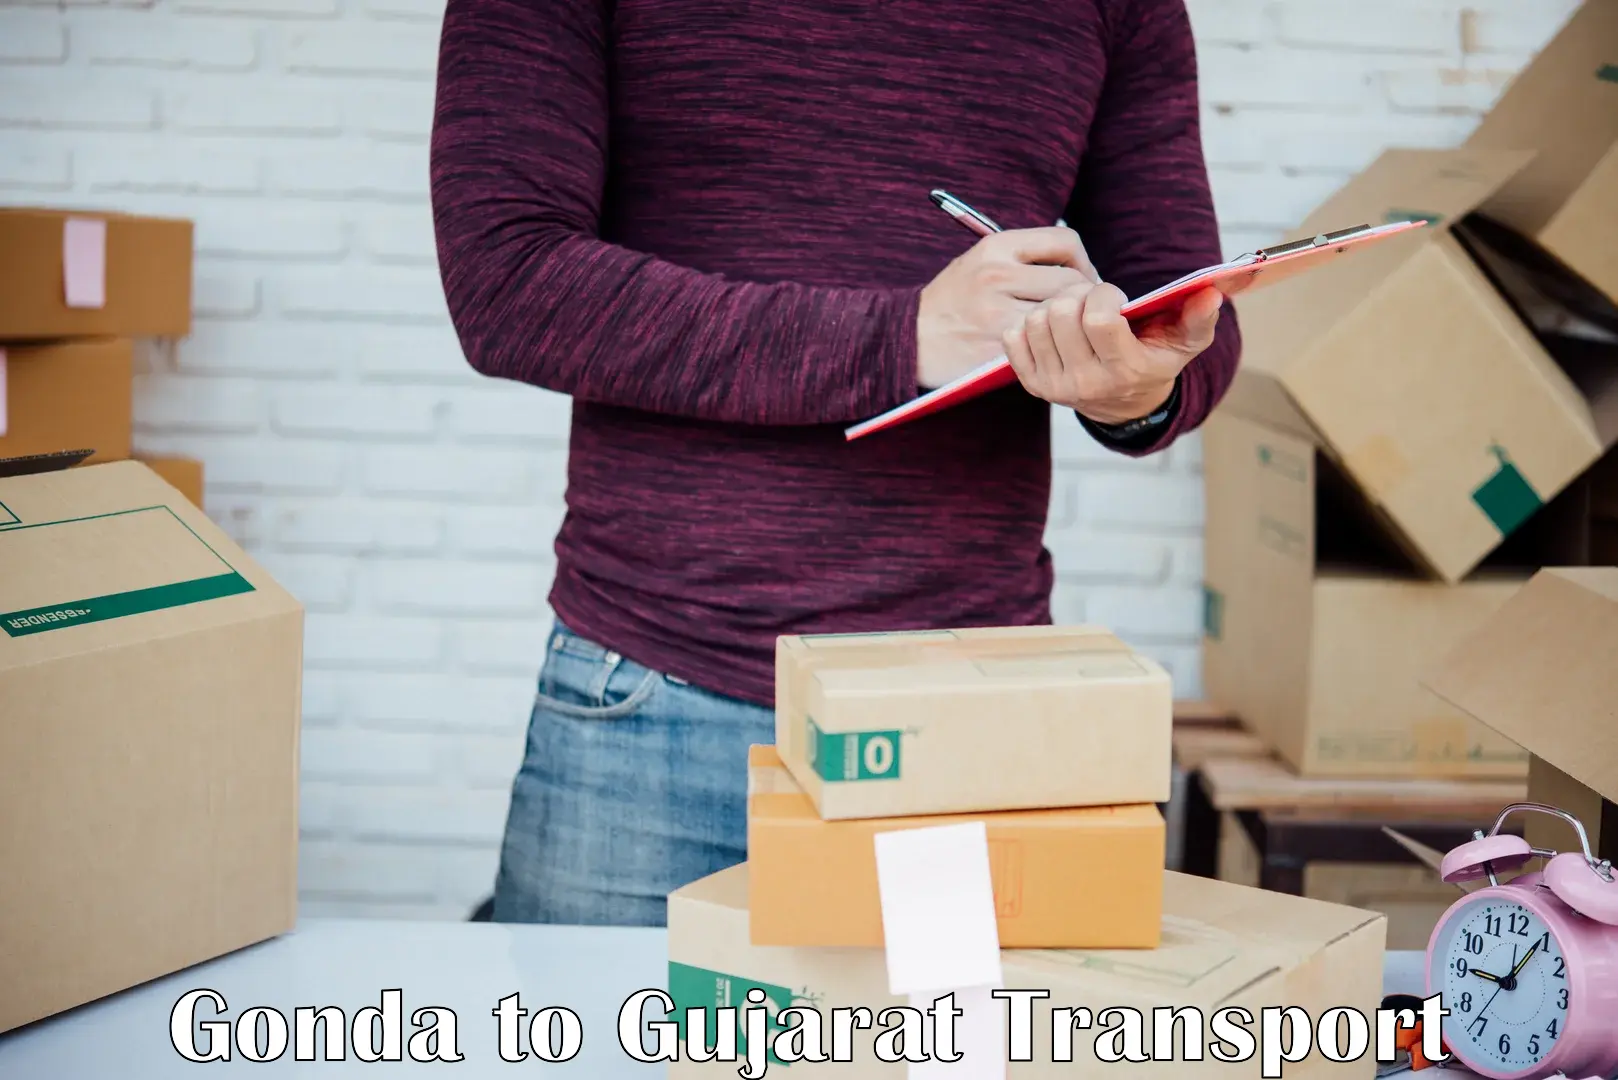 Cargo transport services Gonda to Bhatiya